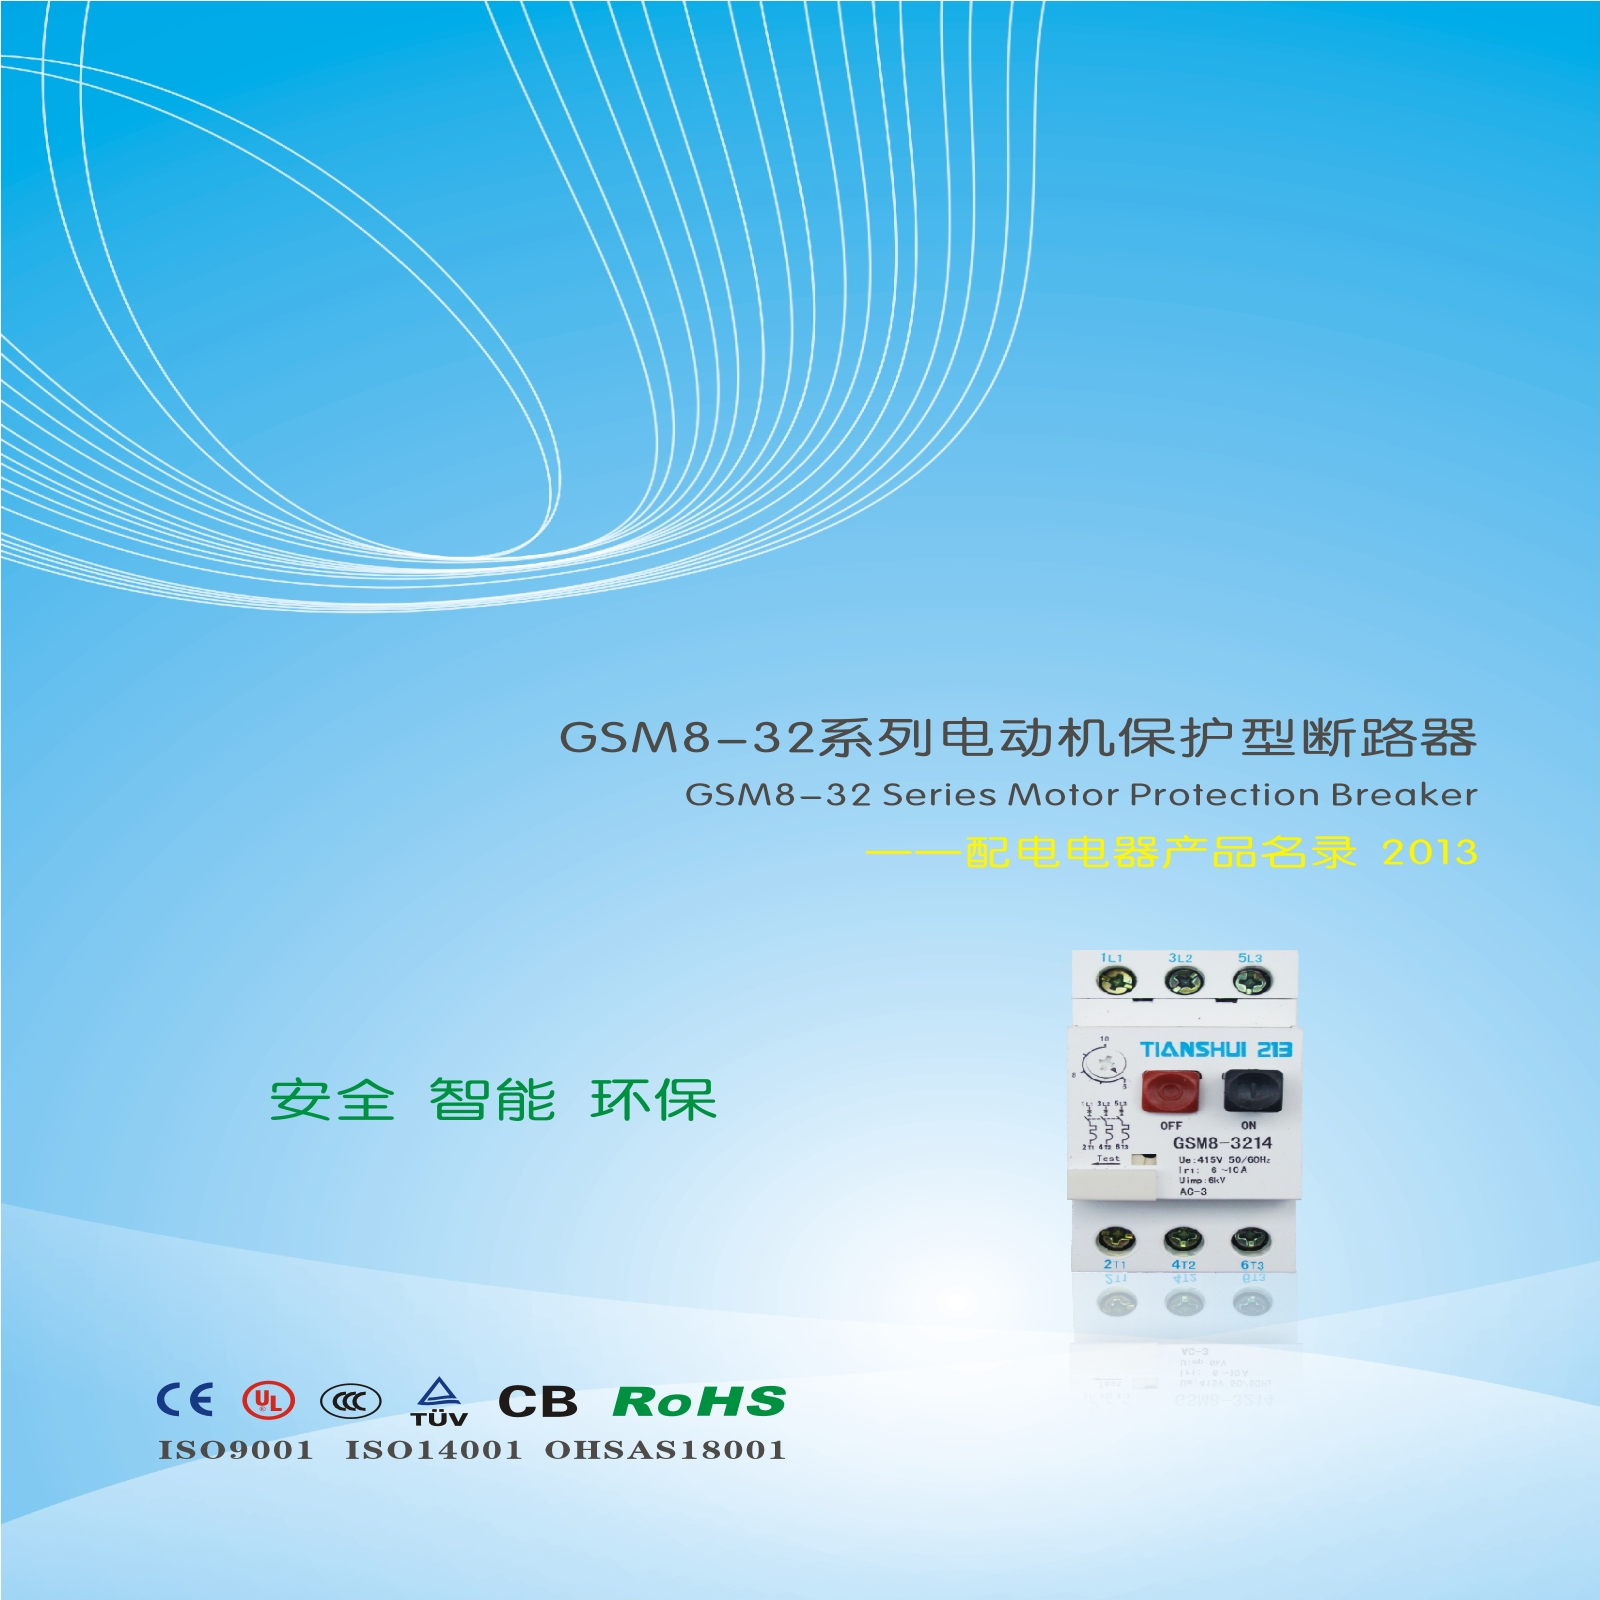 GSM8-32系列电动机保护型断路器